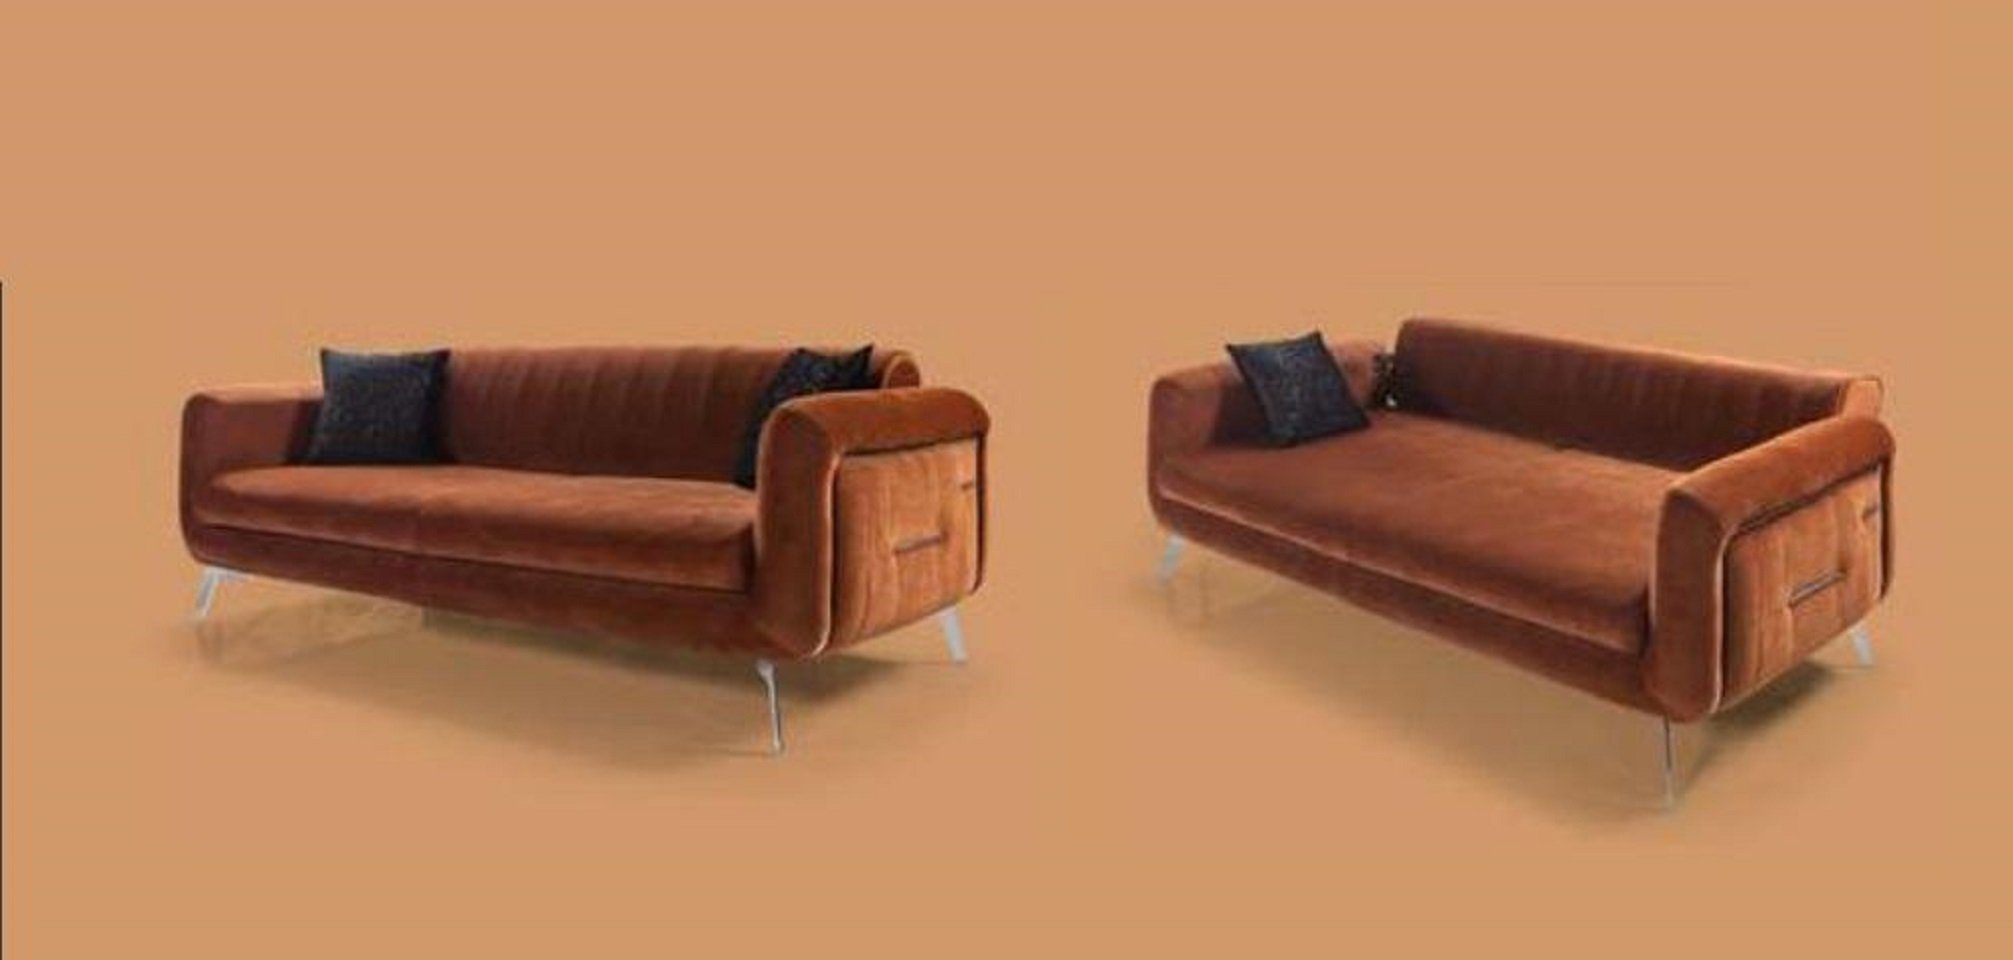 3 Made Sofa JVmoebel 3+3+1 in Teile, Braun Sofas, Garnitur Sessel Luxus Set Sofagarnitur Europe 3tlg Sitzer